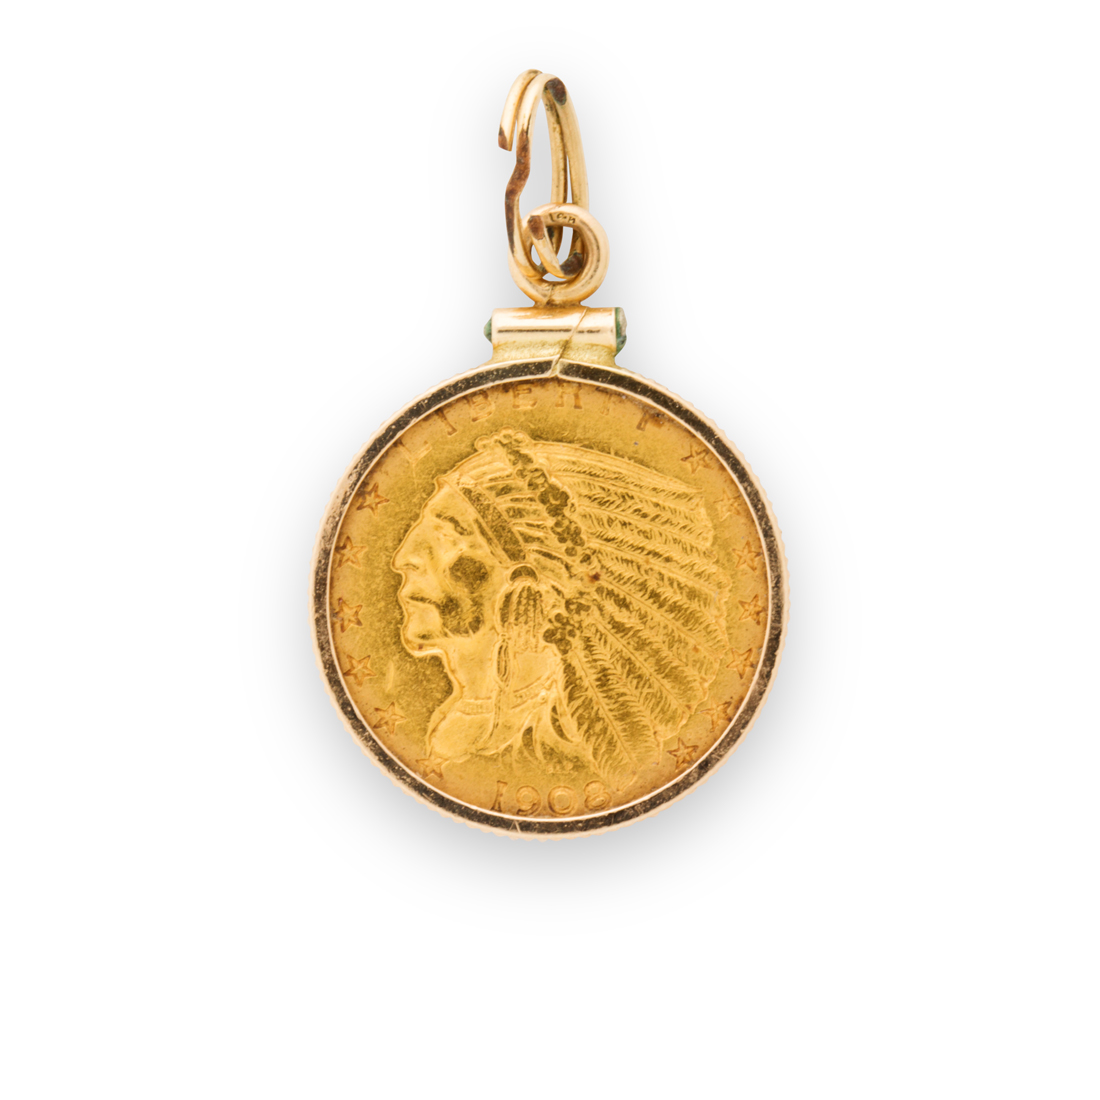 A GOLD COIN AND FOURTEEN KARAT 3a285f